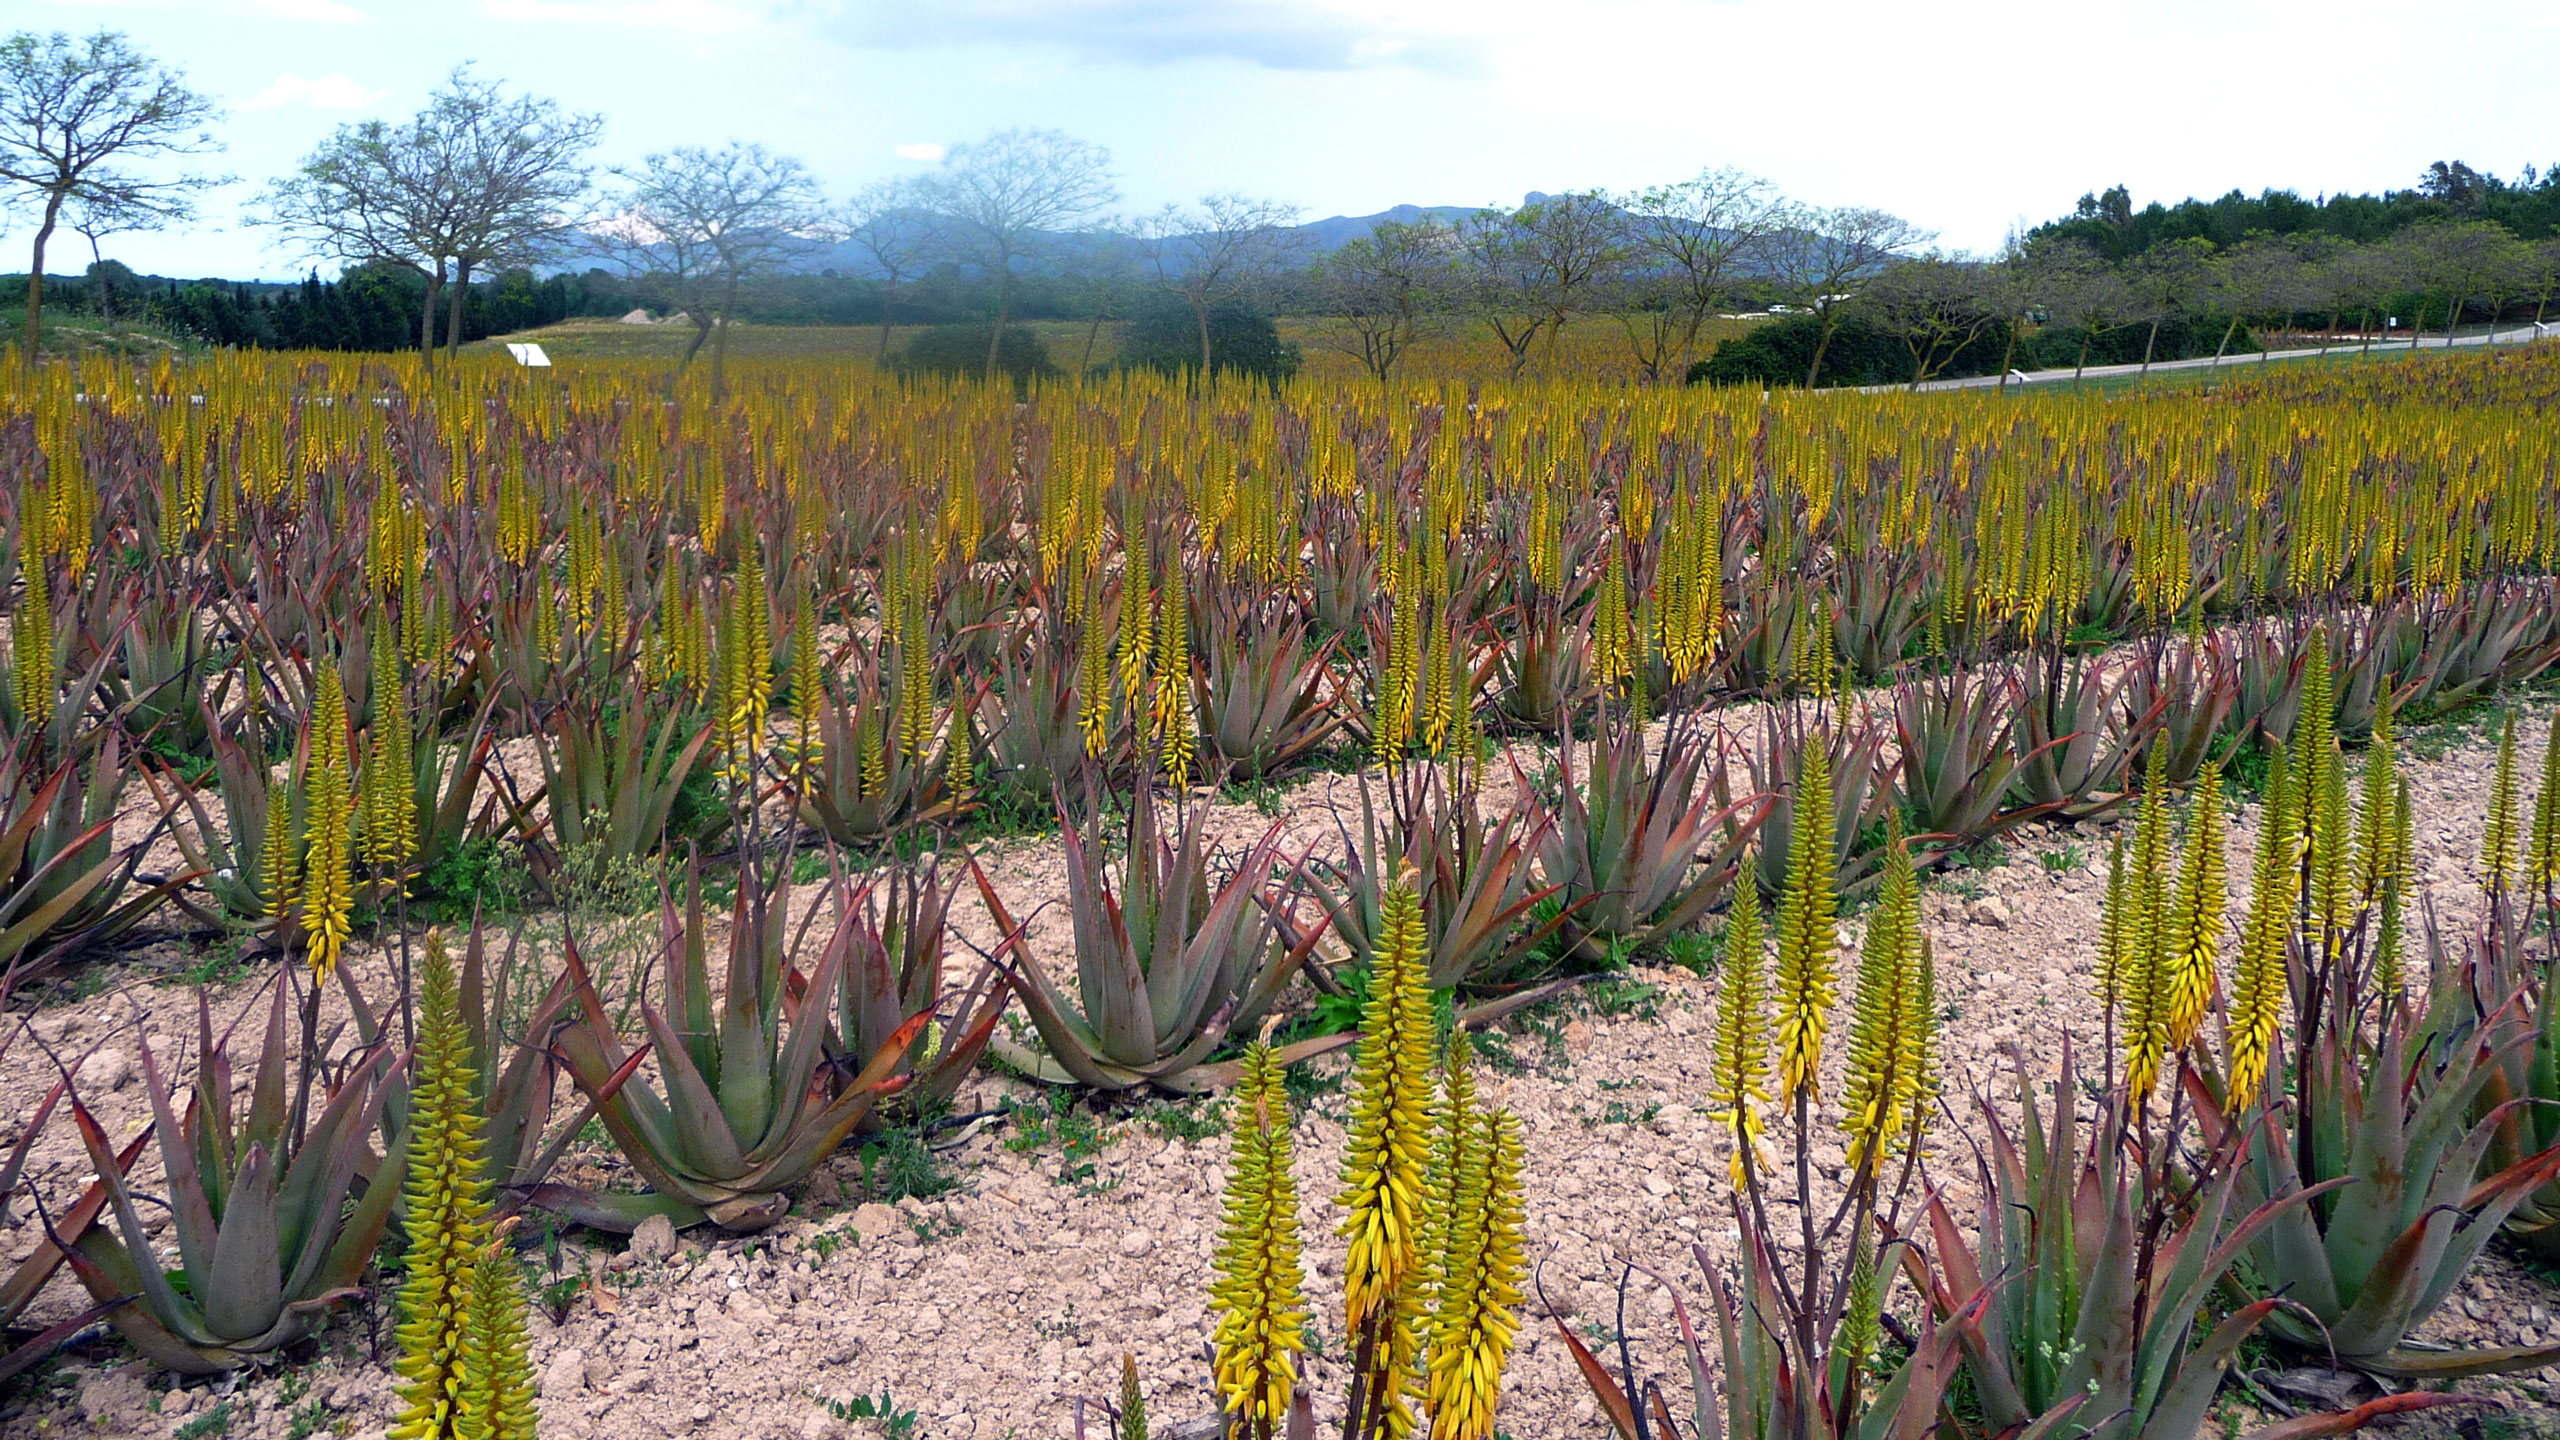 Die Aloe Vera de Mallorca Farm liegt etwas landeinwärts bei Santa Margalida ca. 15 Autominuten vom Ferienort Can Picafort.